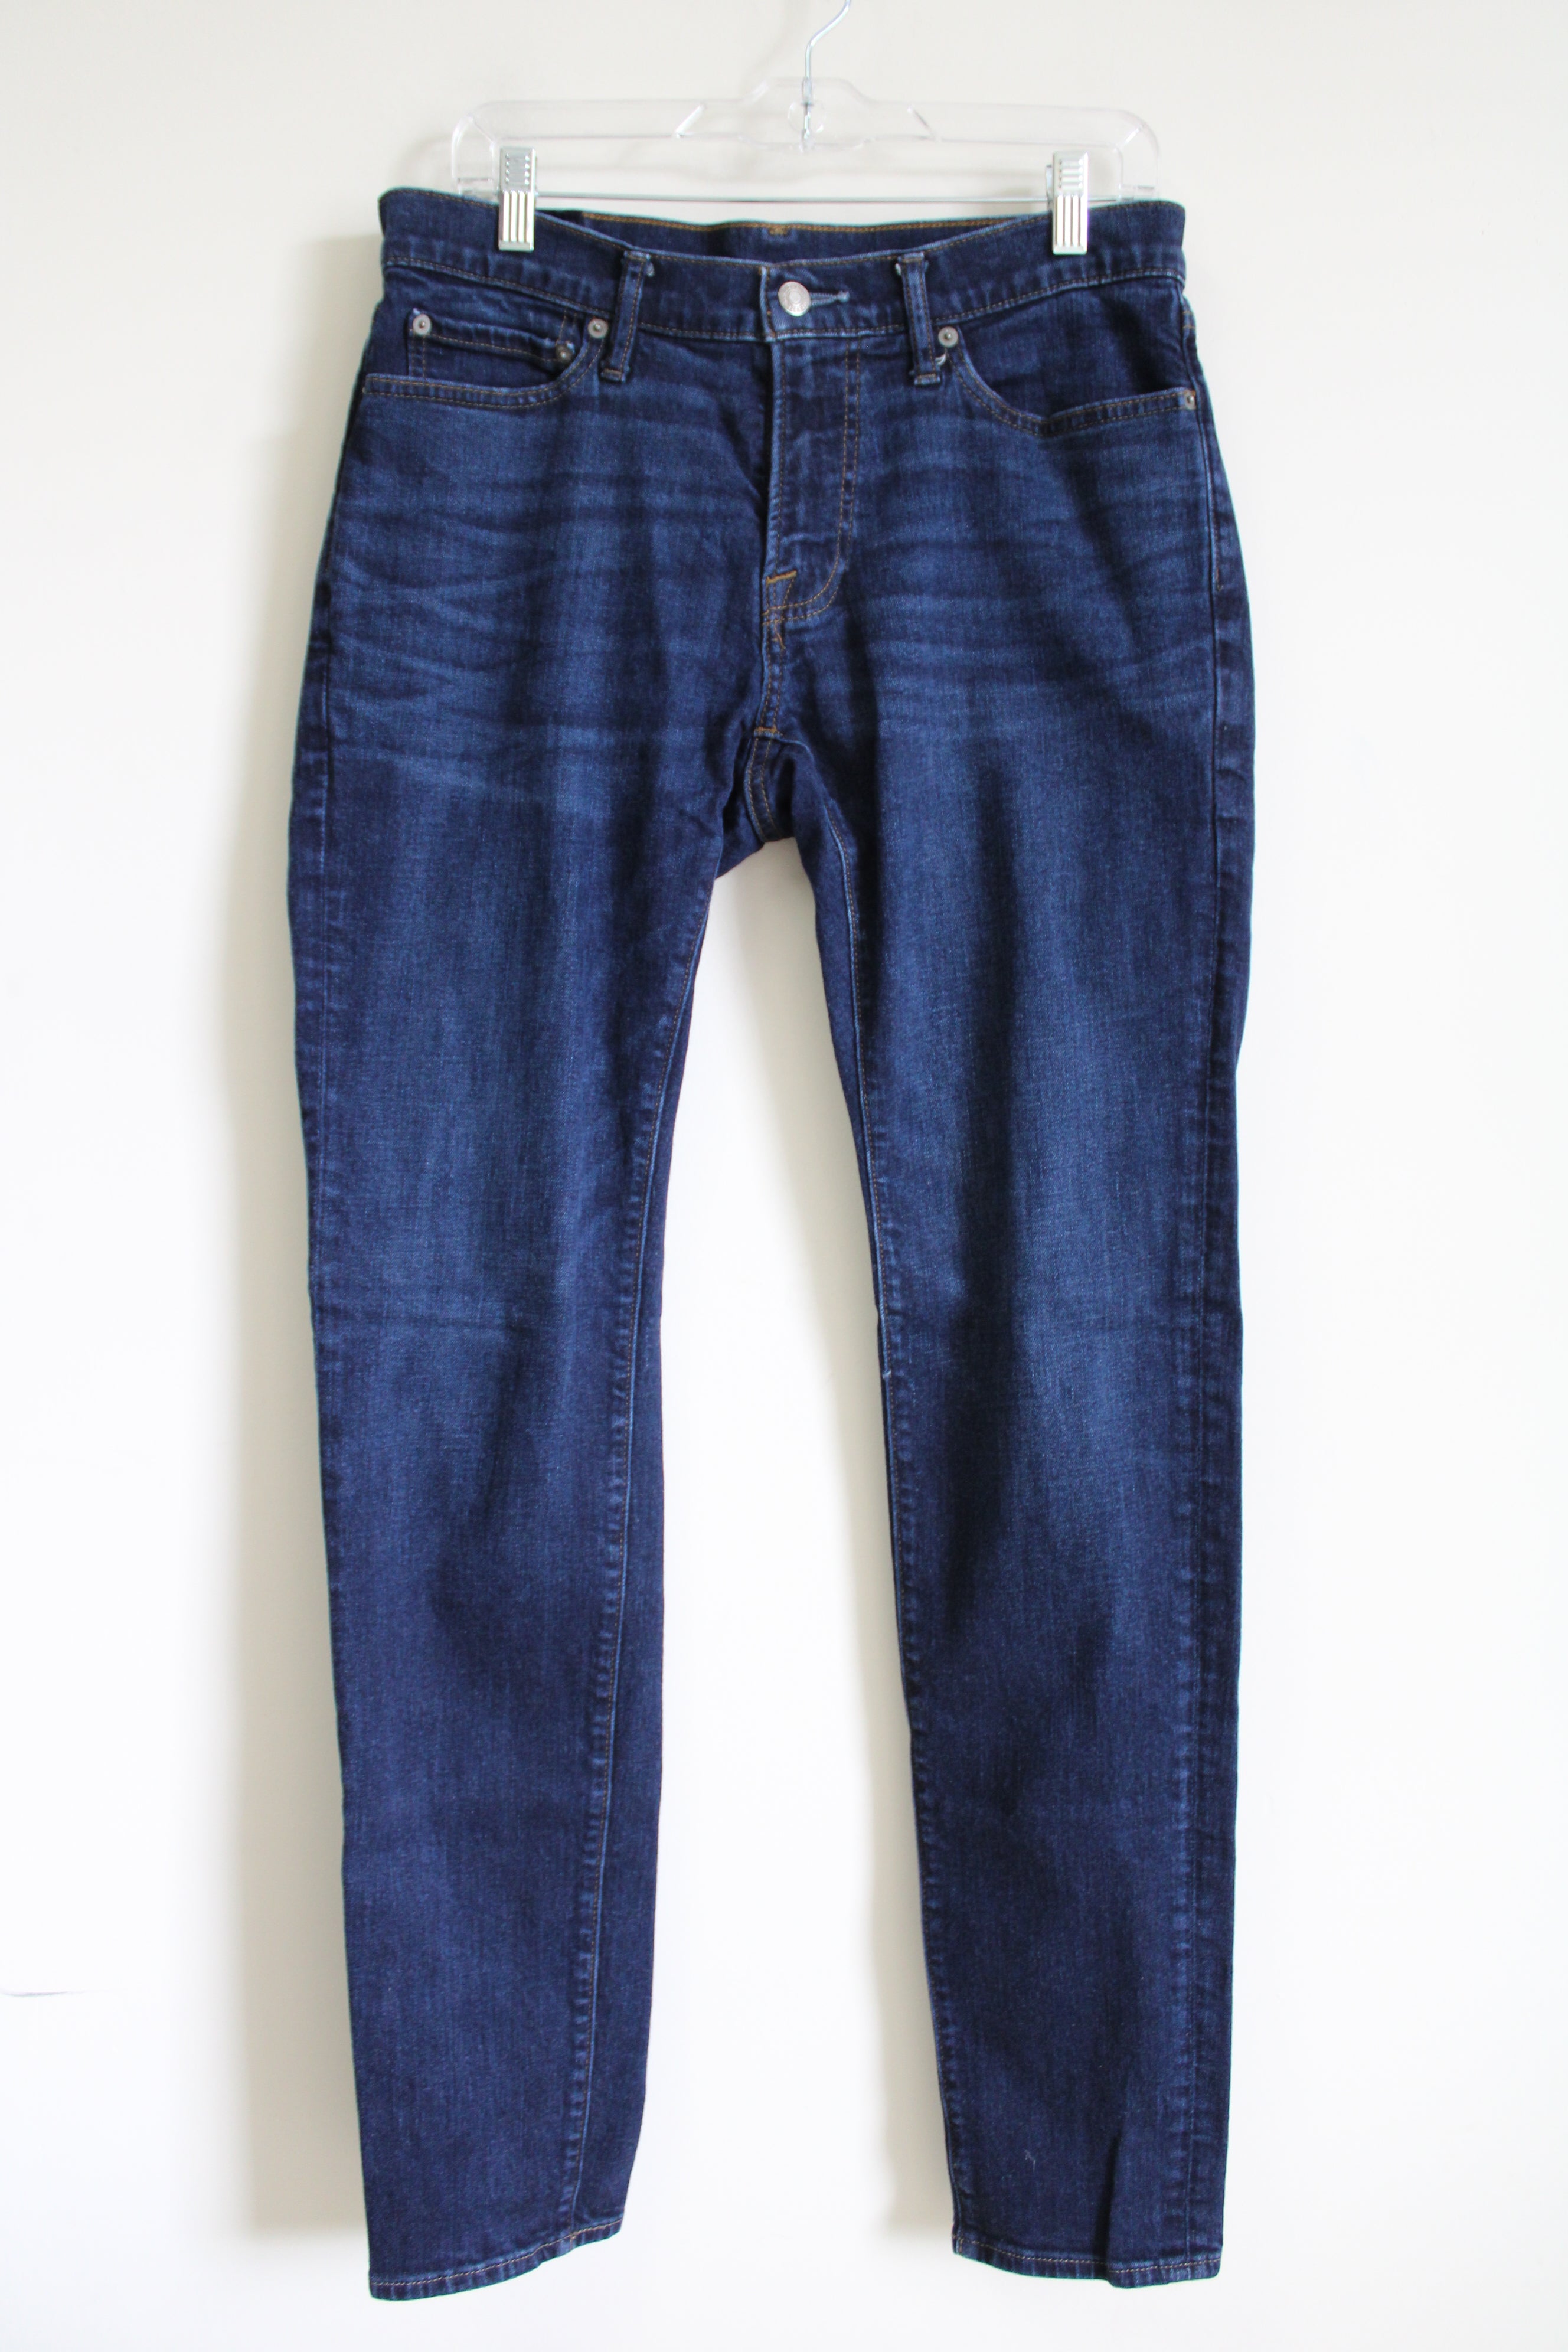 Abercrombie & Fitch Stretch Felix Super Skinny Dark Wash Jeans | 31X34